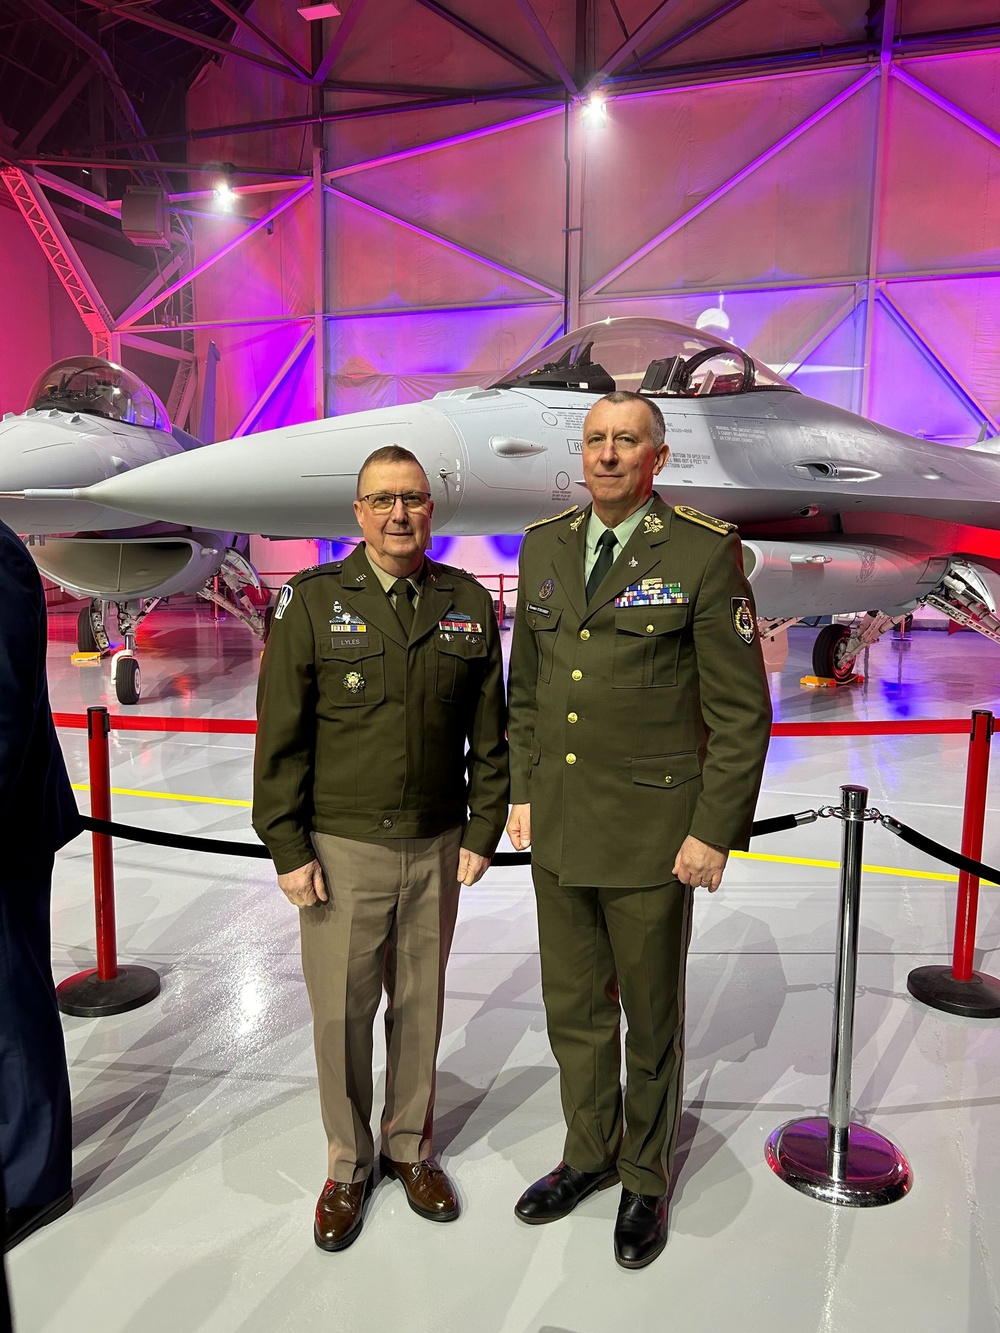 Davids – Správy – Partner Národnej gardy štátu Indiana, Slovensko dostane F-16